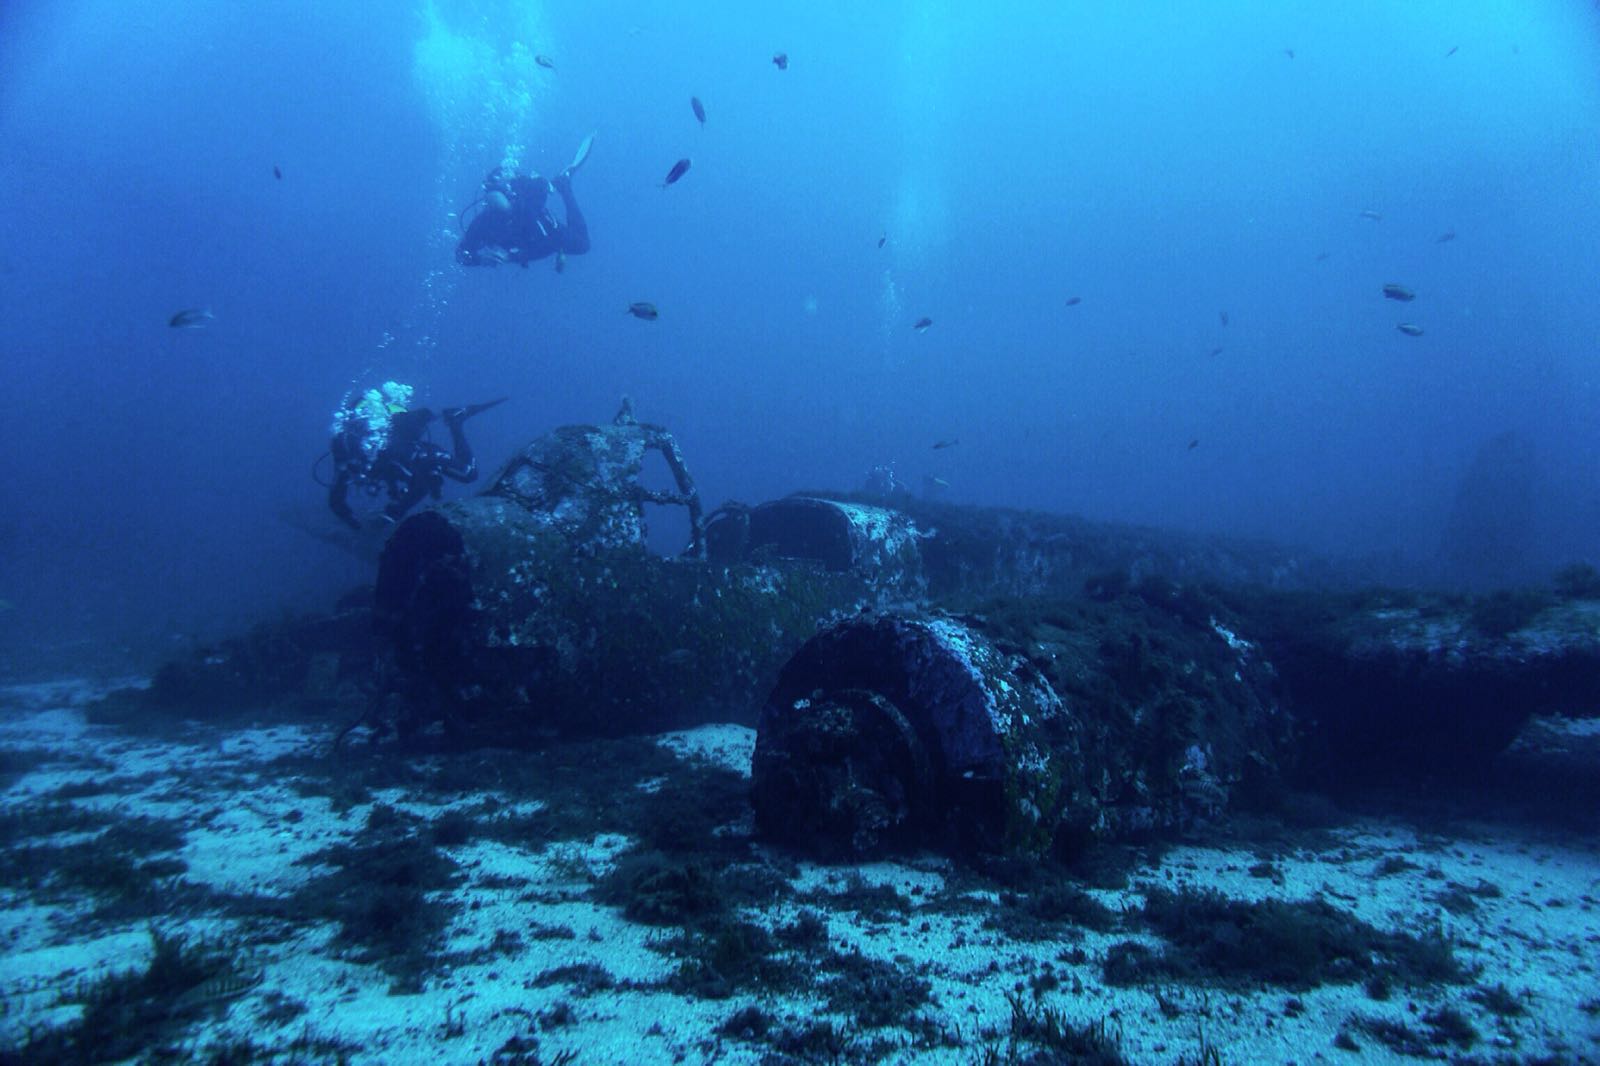 inmersión avión sumergido, Menorca, Immersion submerged plane, Menorca